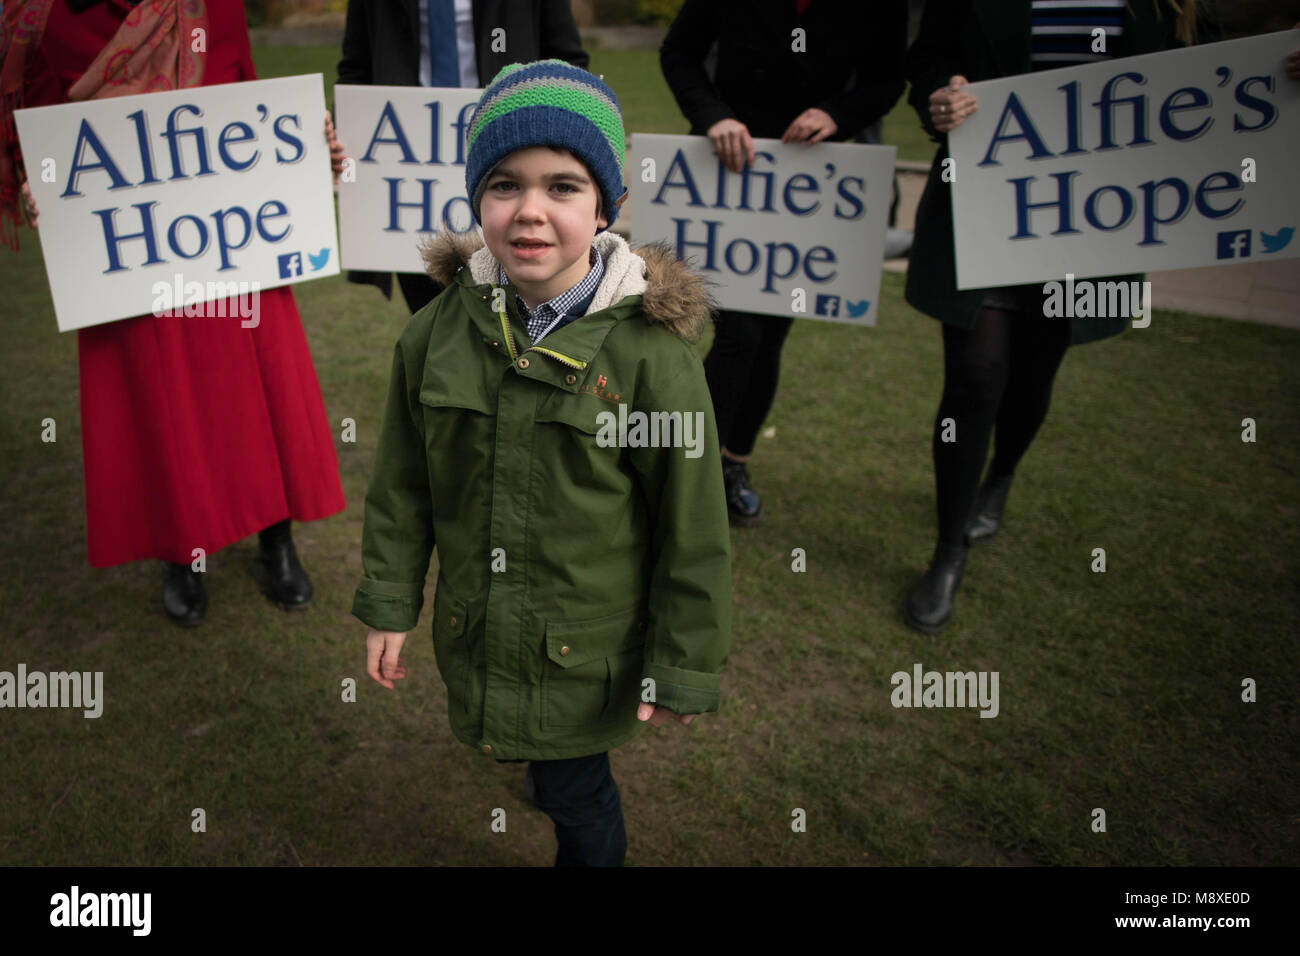 Sechs-jährige Alfie Dingley mit Anhänger in Westminster, London, vor der Übergabe in einer 380.000 Mann starken Petition Nummer 10 Downing Street Fragen für ihn medizinisches Cannabis seine Epilepsie zu behandeln. Stockfoto